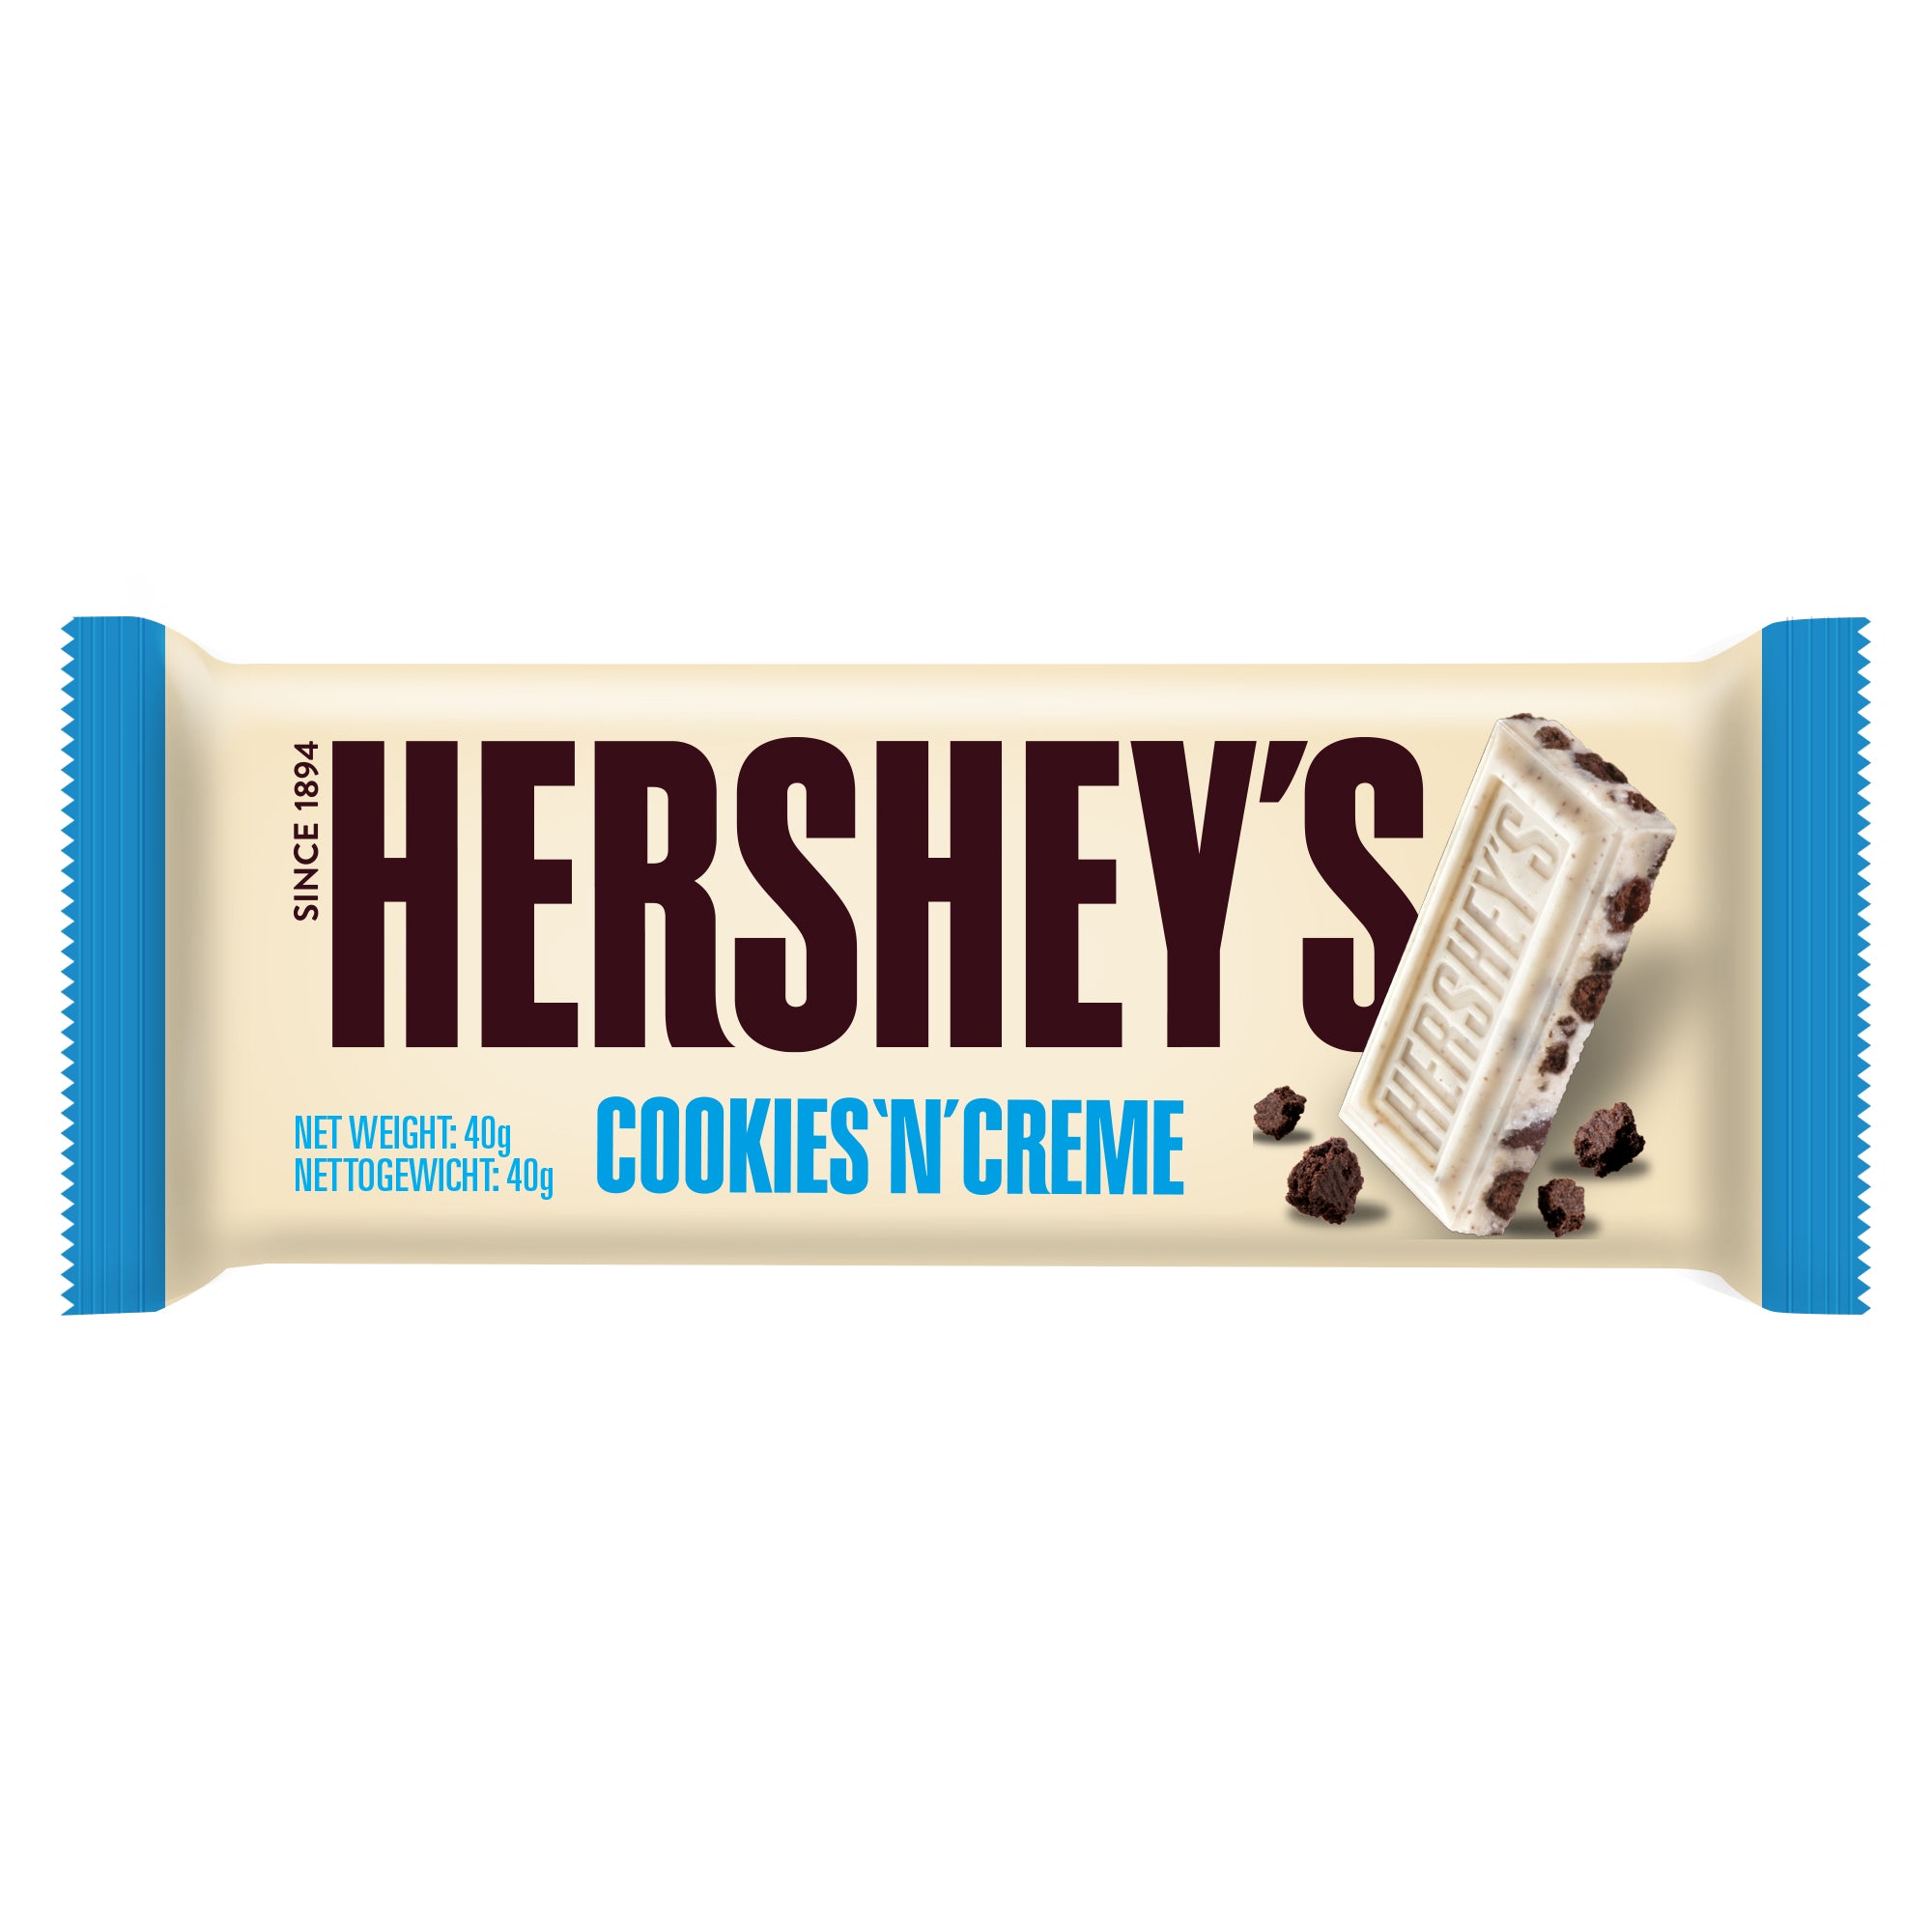 Hershey's Schoko-Knuspergenuss mit Cookie-Stückchen in zwei Sorten